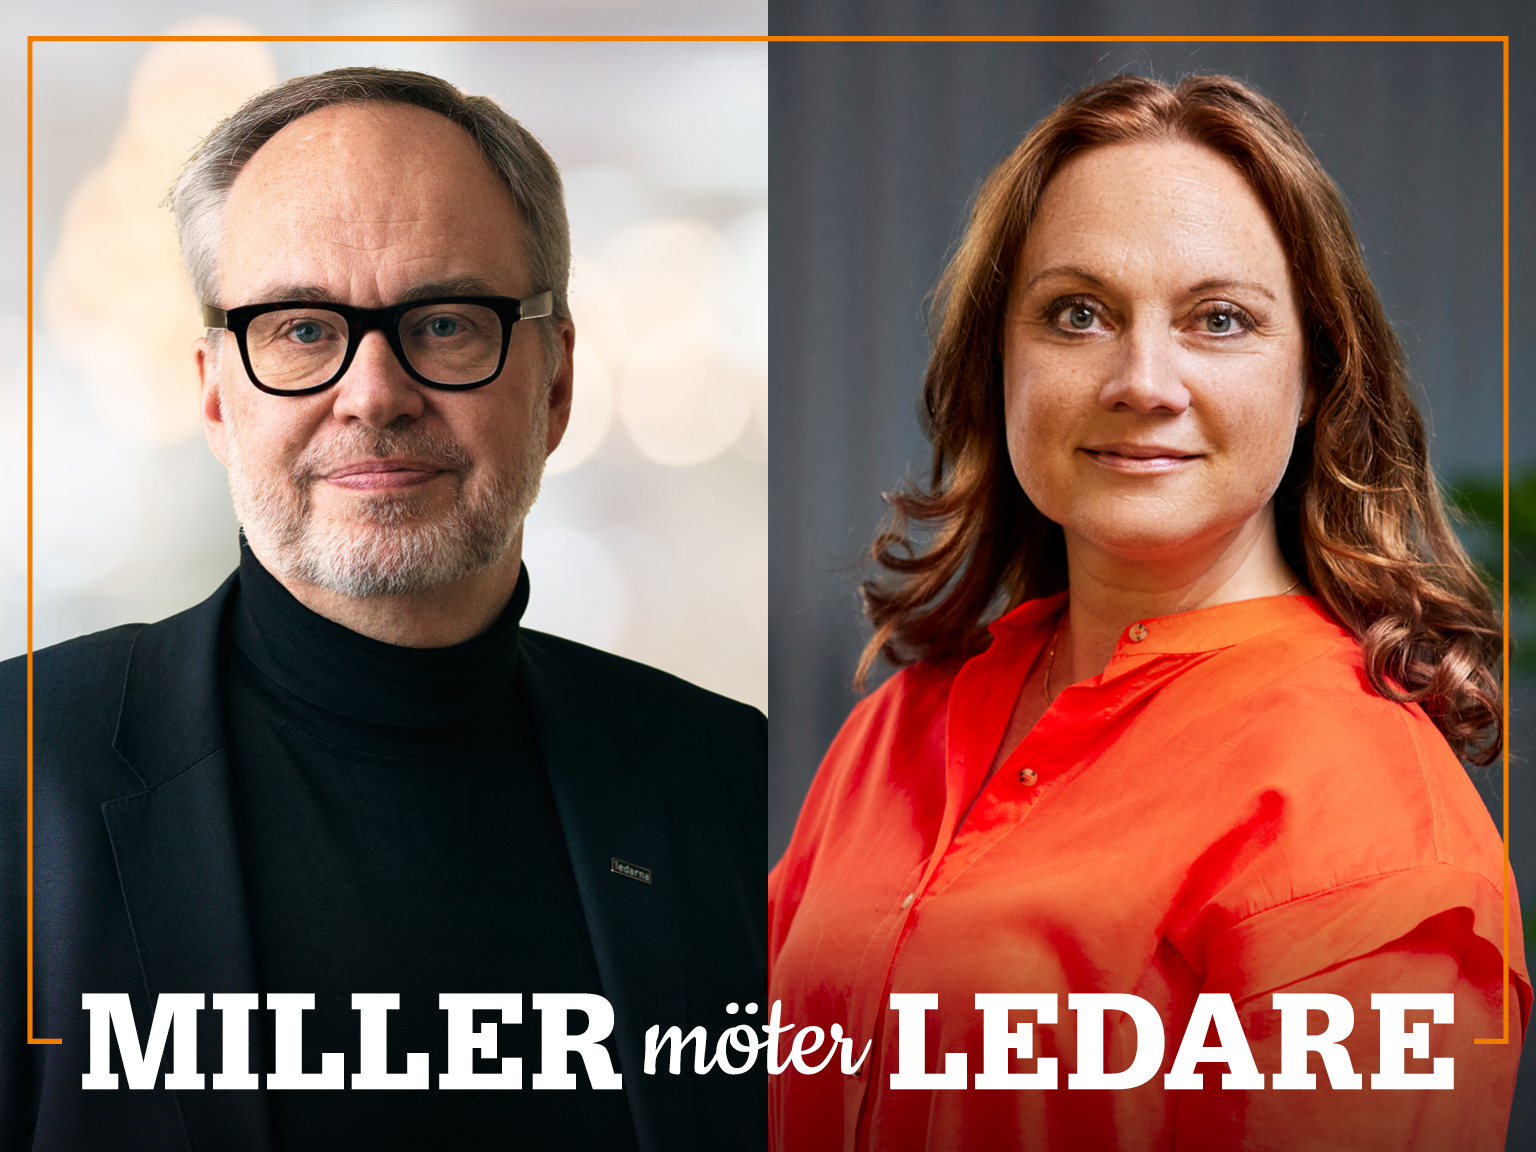 Omslag för podden Miller möter ledare – bild på Andreas Miller och Susanne Holmström.